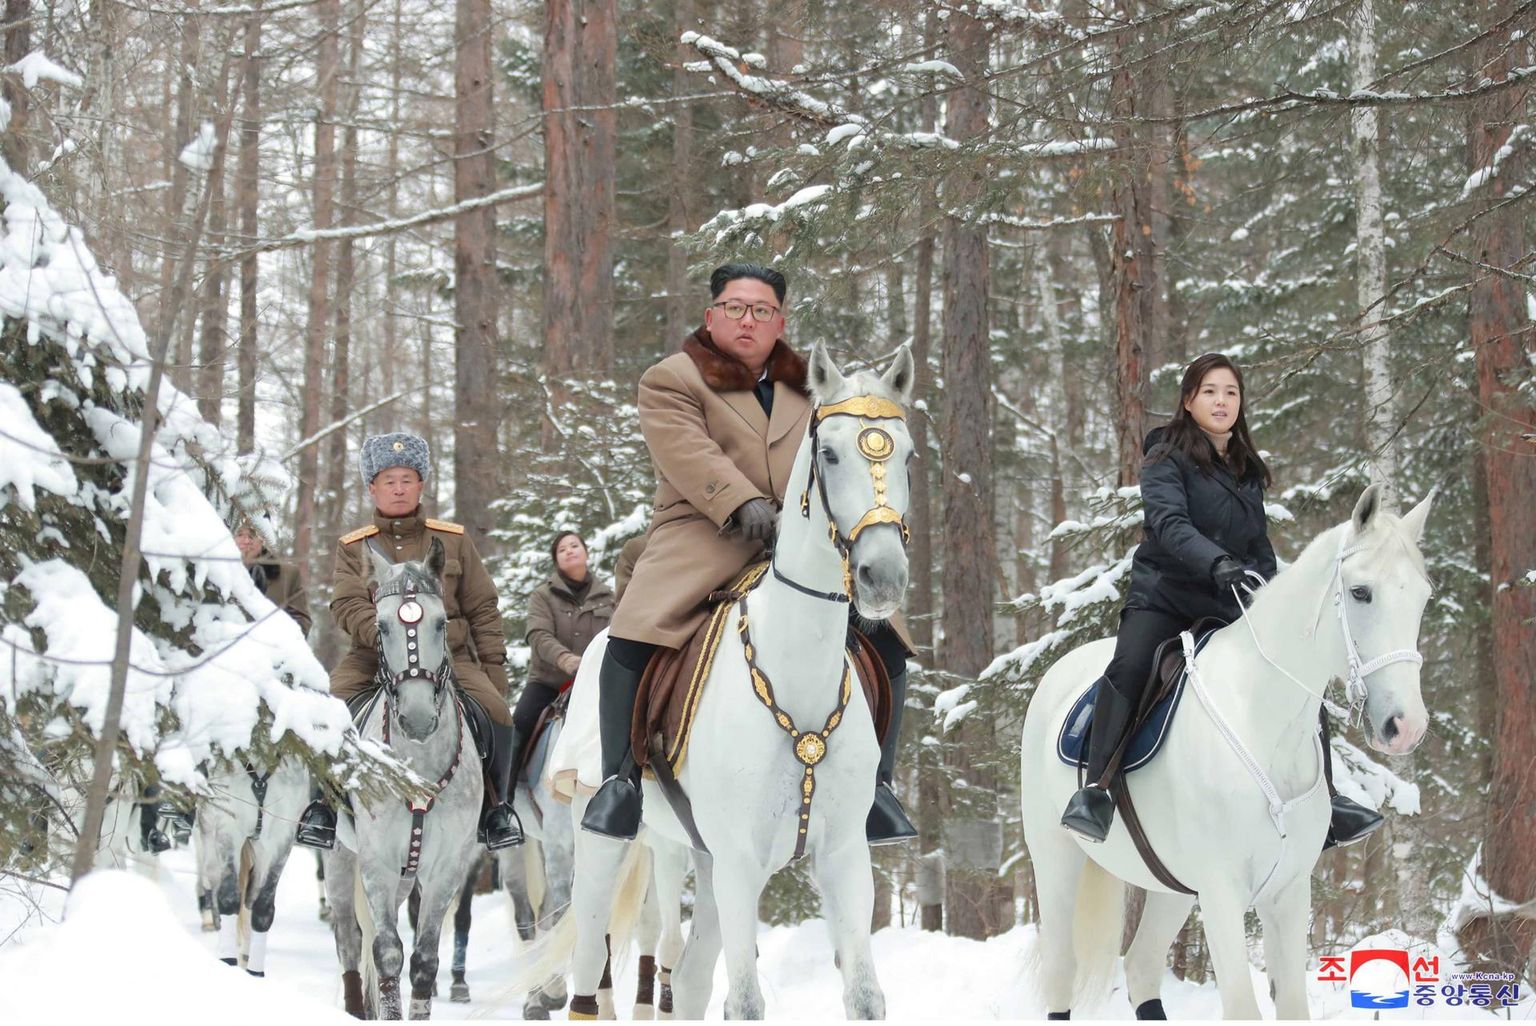 Põhja-Korea liider Kim Jong-un koos abikaasa Ri Sol-juga ratsutamas Paektu mäe lähistel.